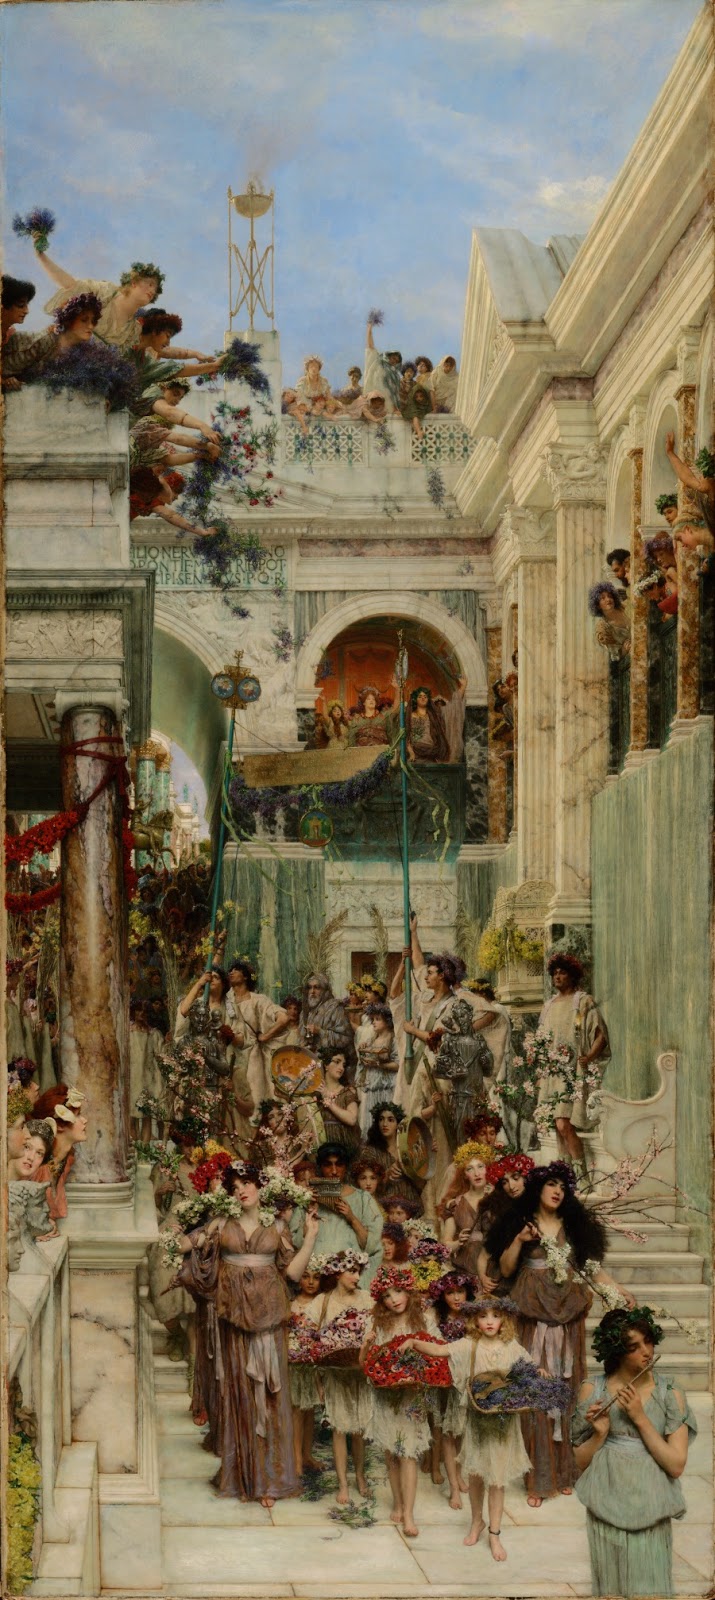 Pintura victoriana con procesión de mujeres y niños con flores descendiendo escaleras de mármol